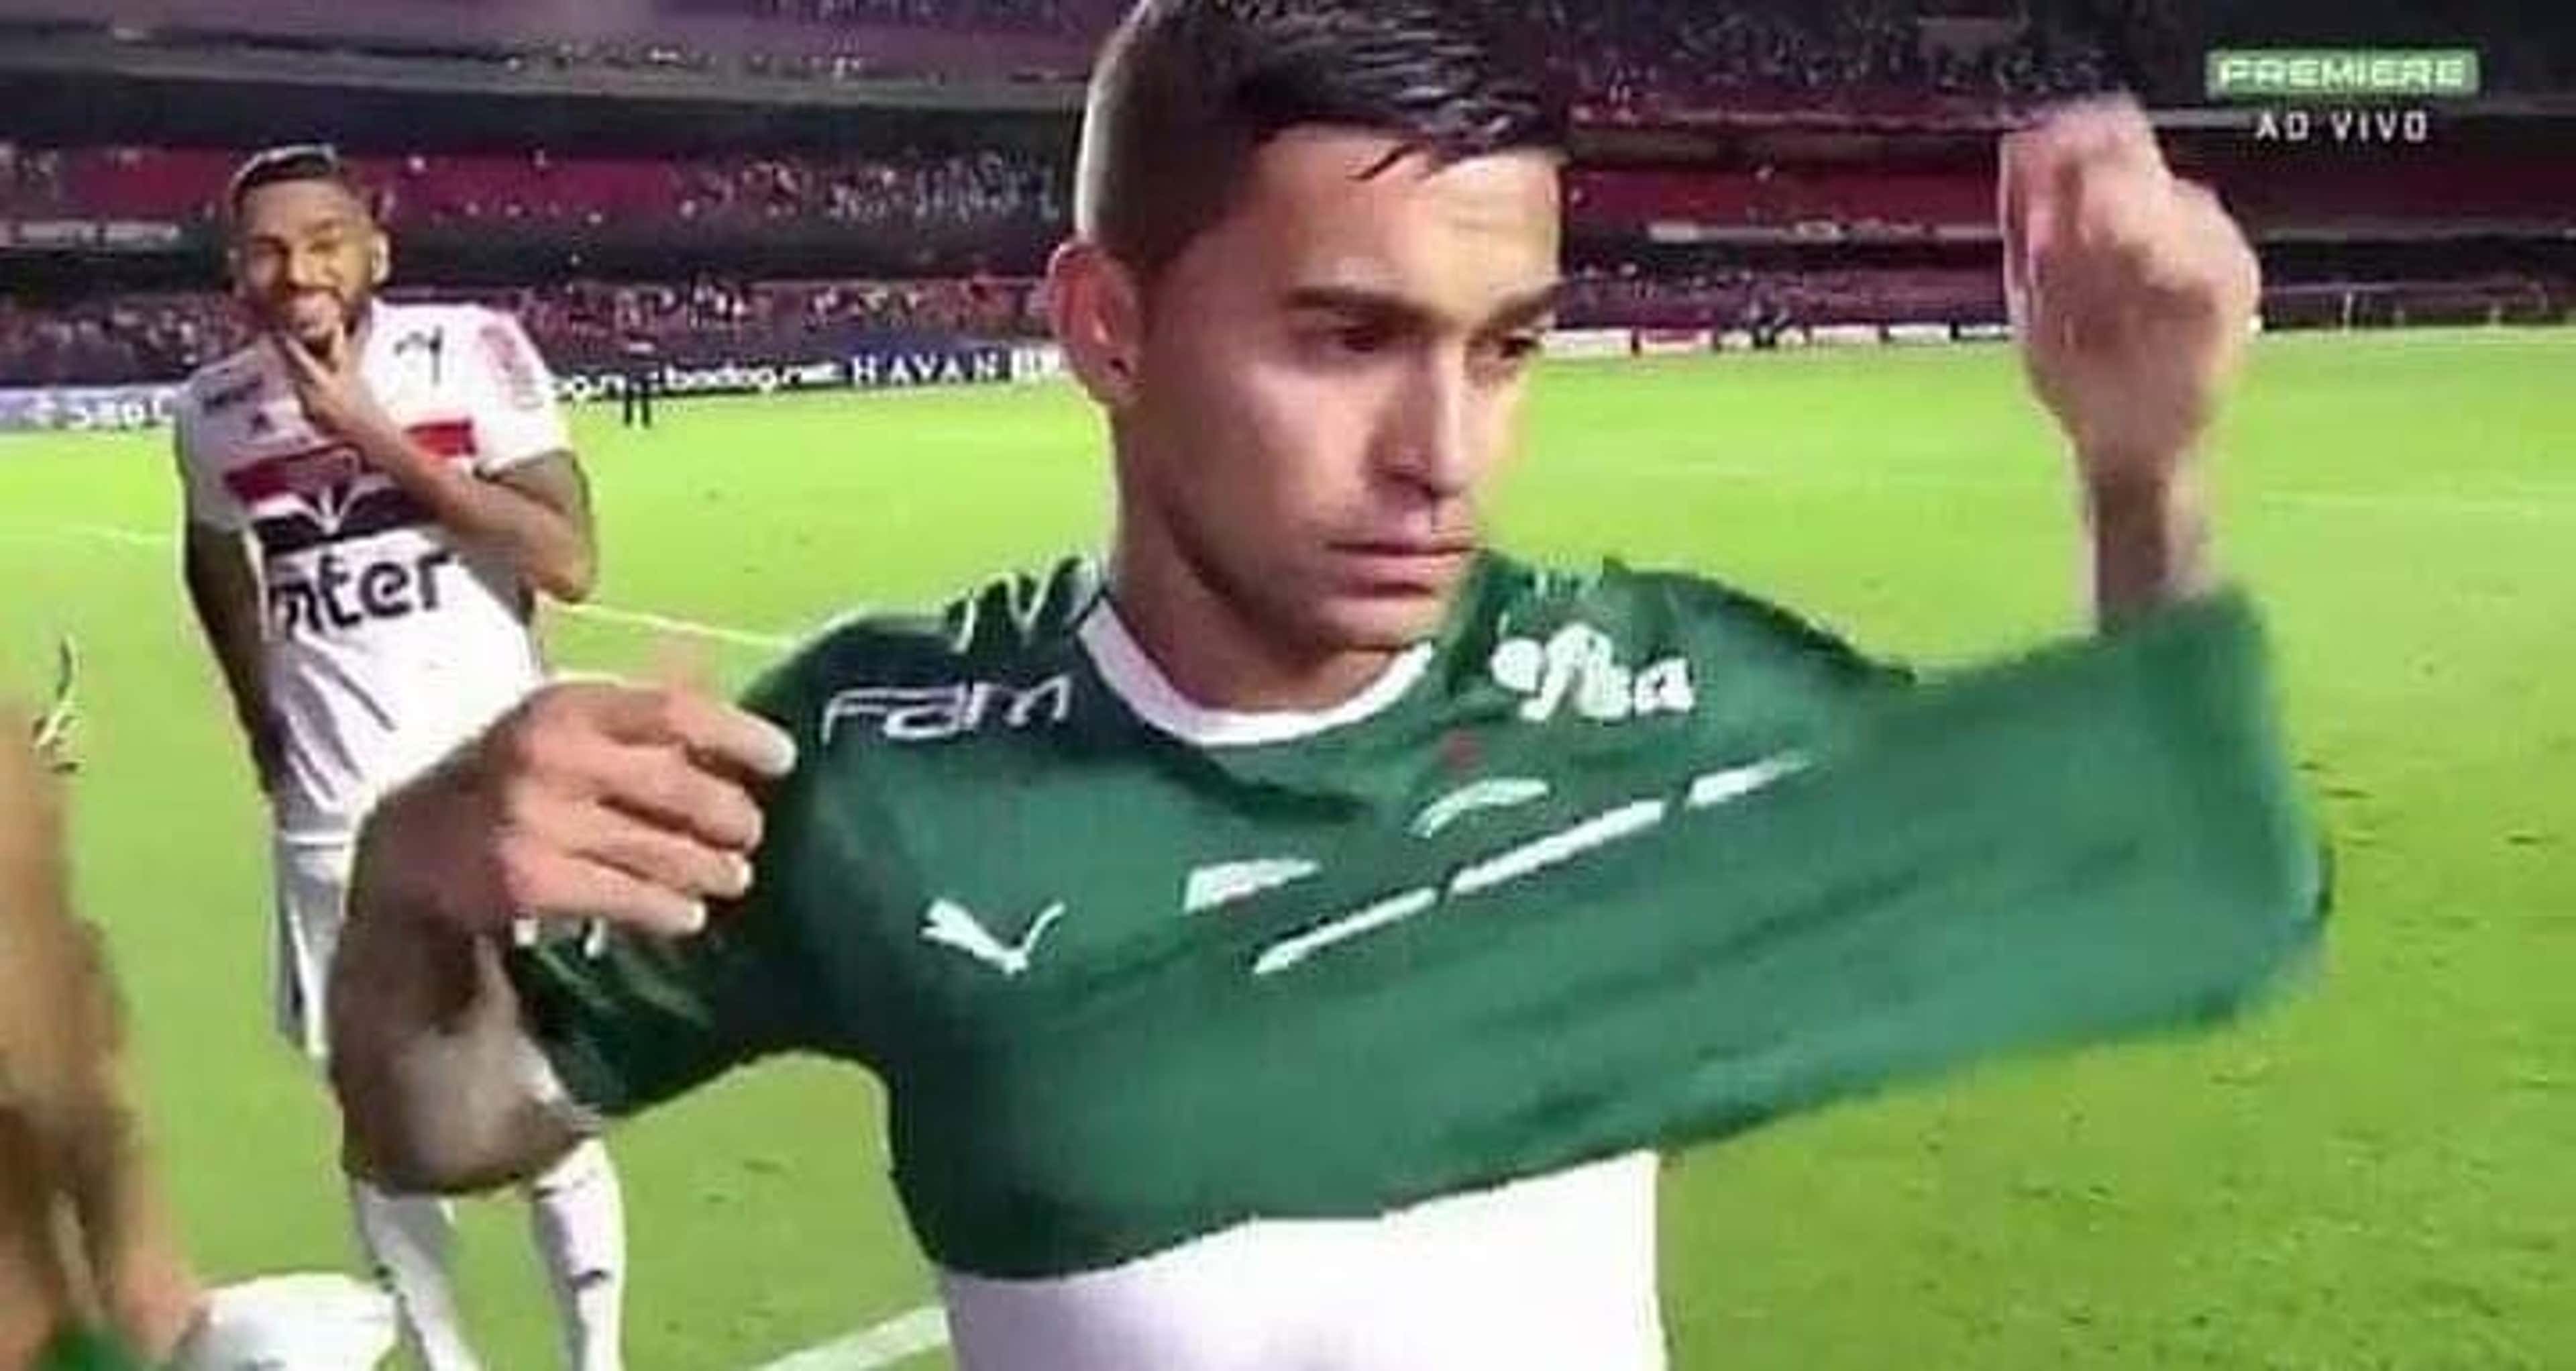 Confira os melhores memes de Fla x Flu e São Paulo x Palmeiras